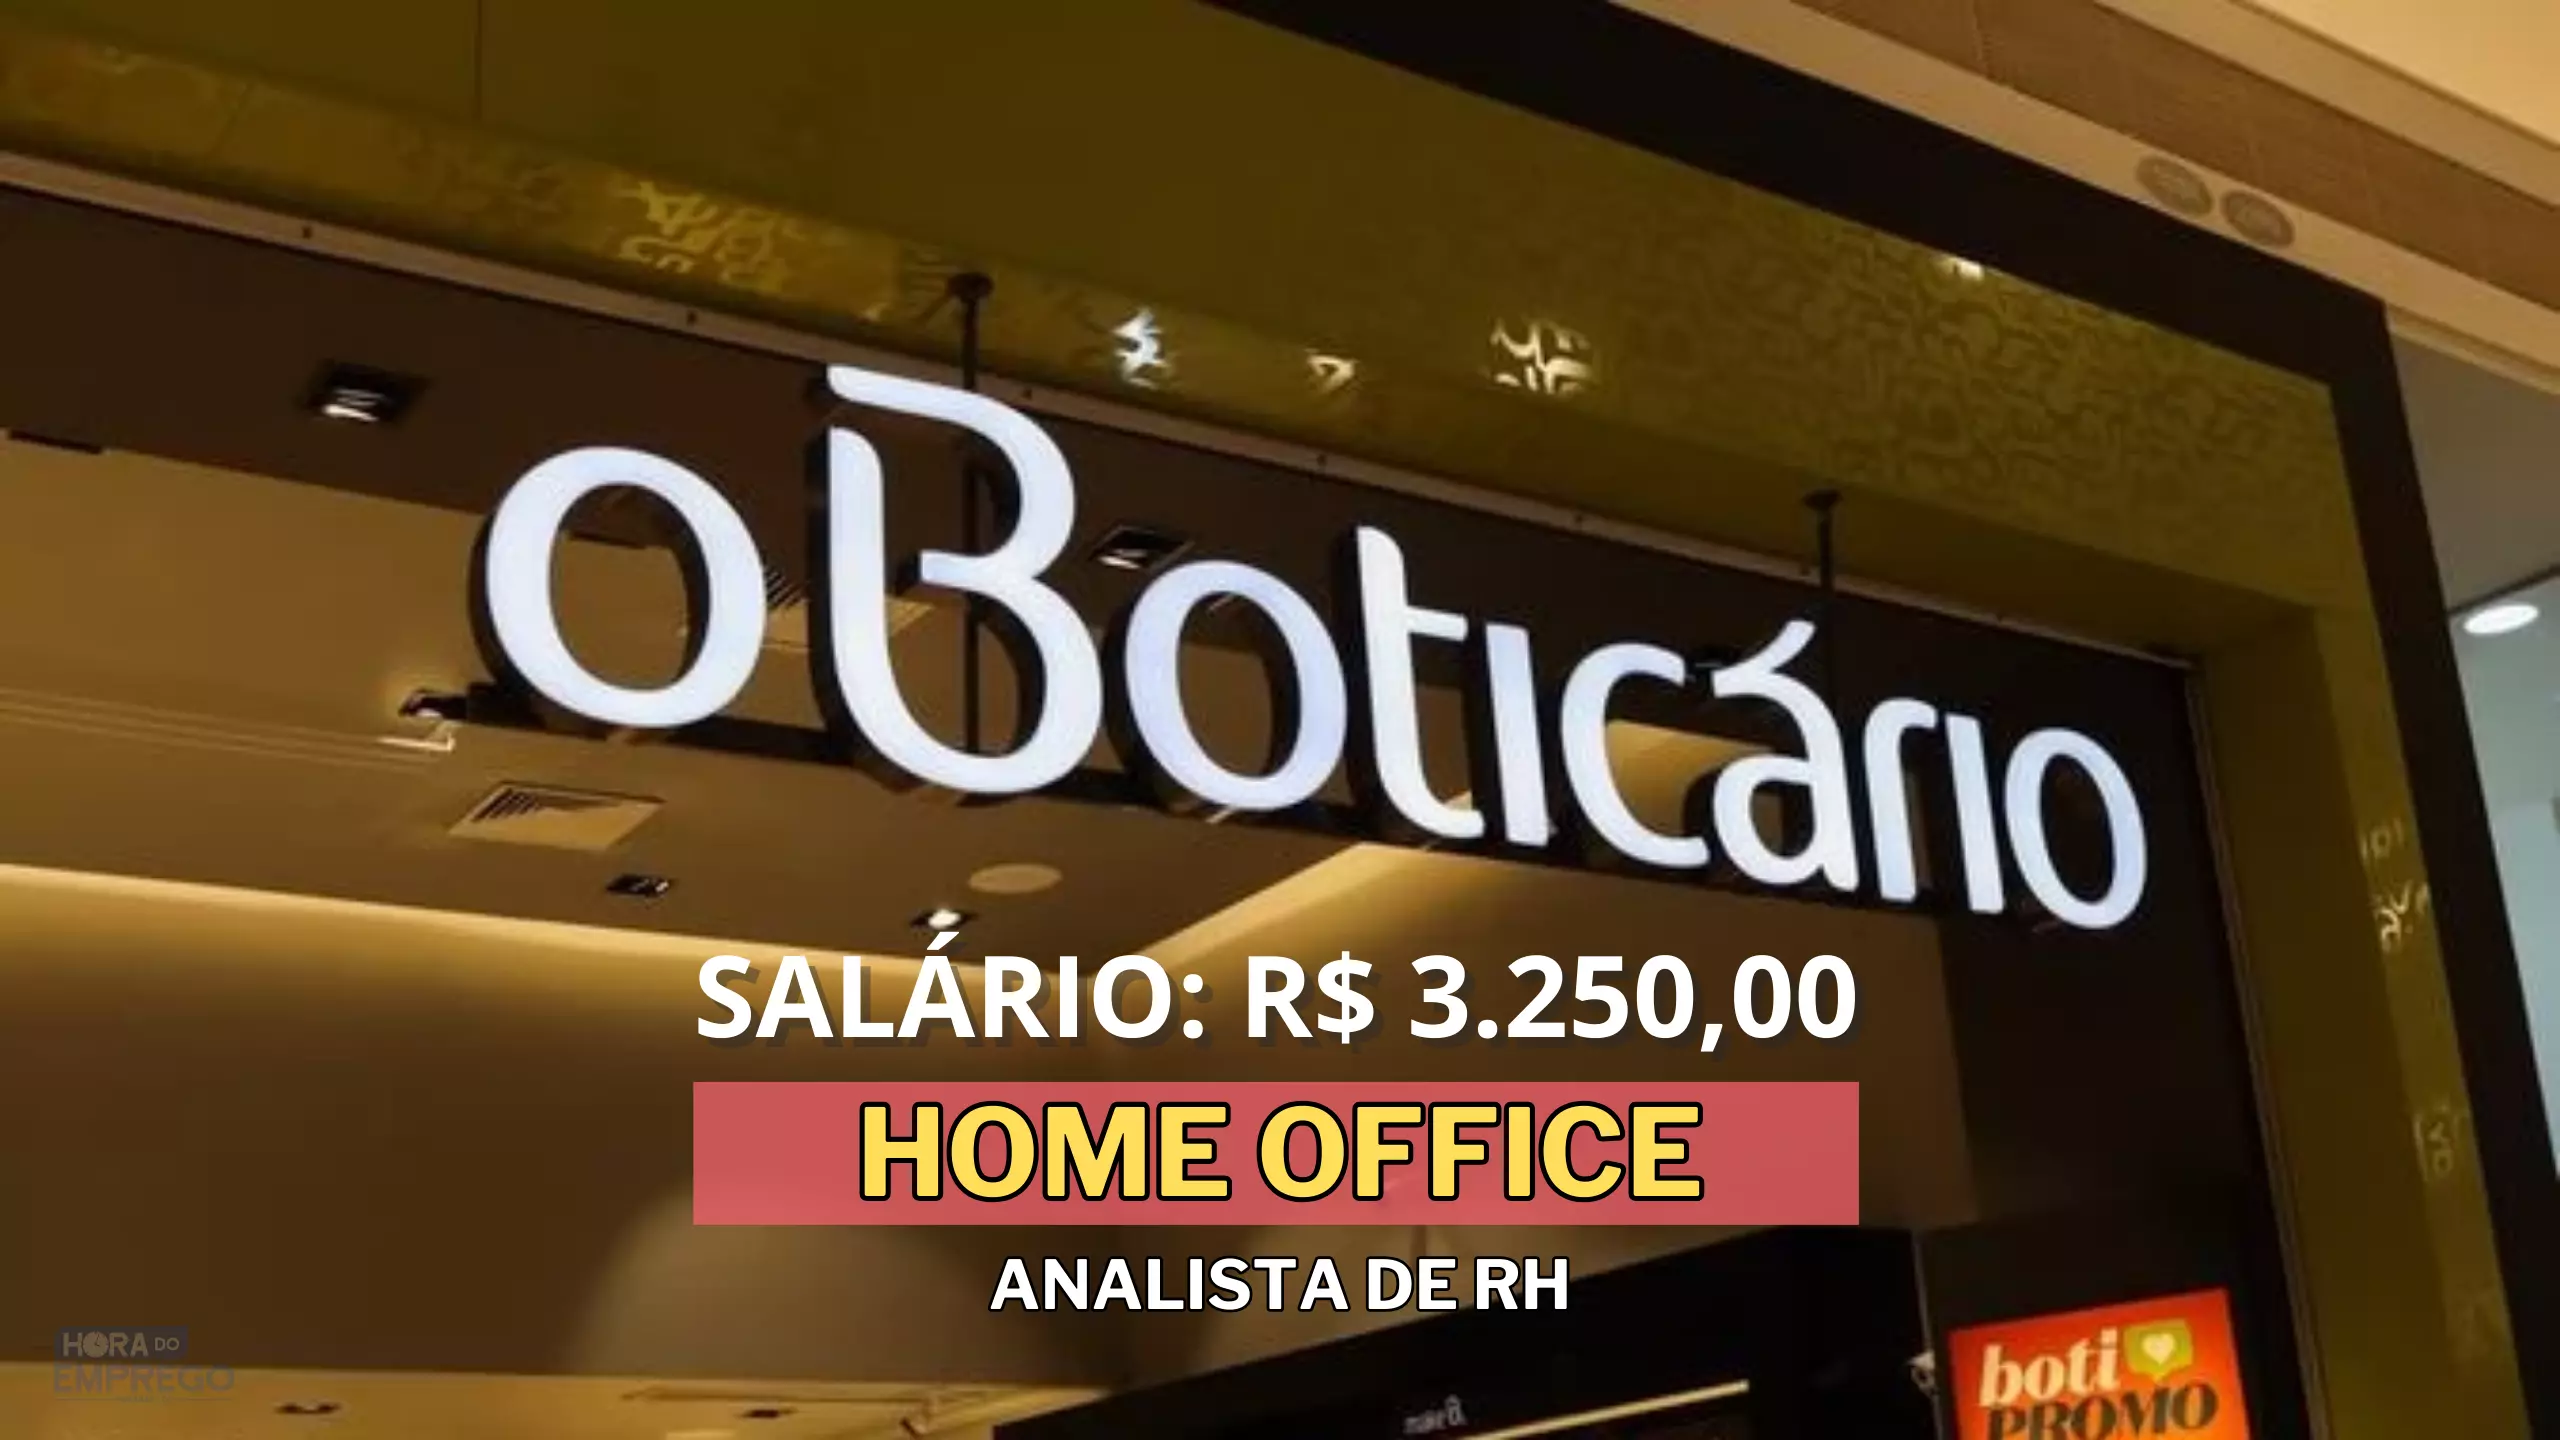 Grupo Boticário abre vaga HOME OFFICE com salário de R$ 3.250,00 para Analista de RH